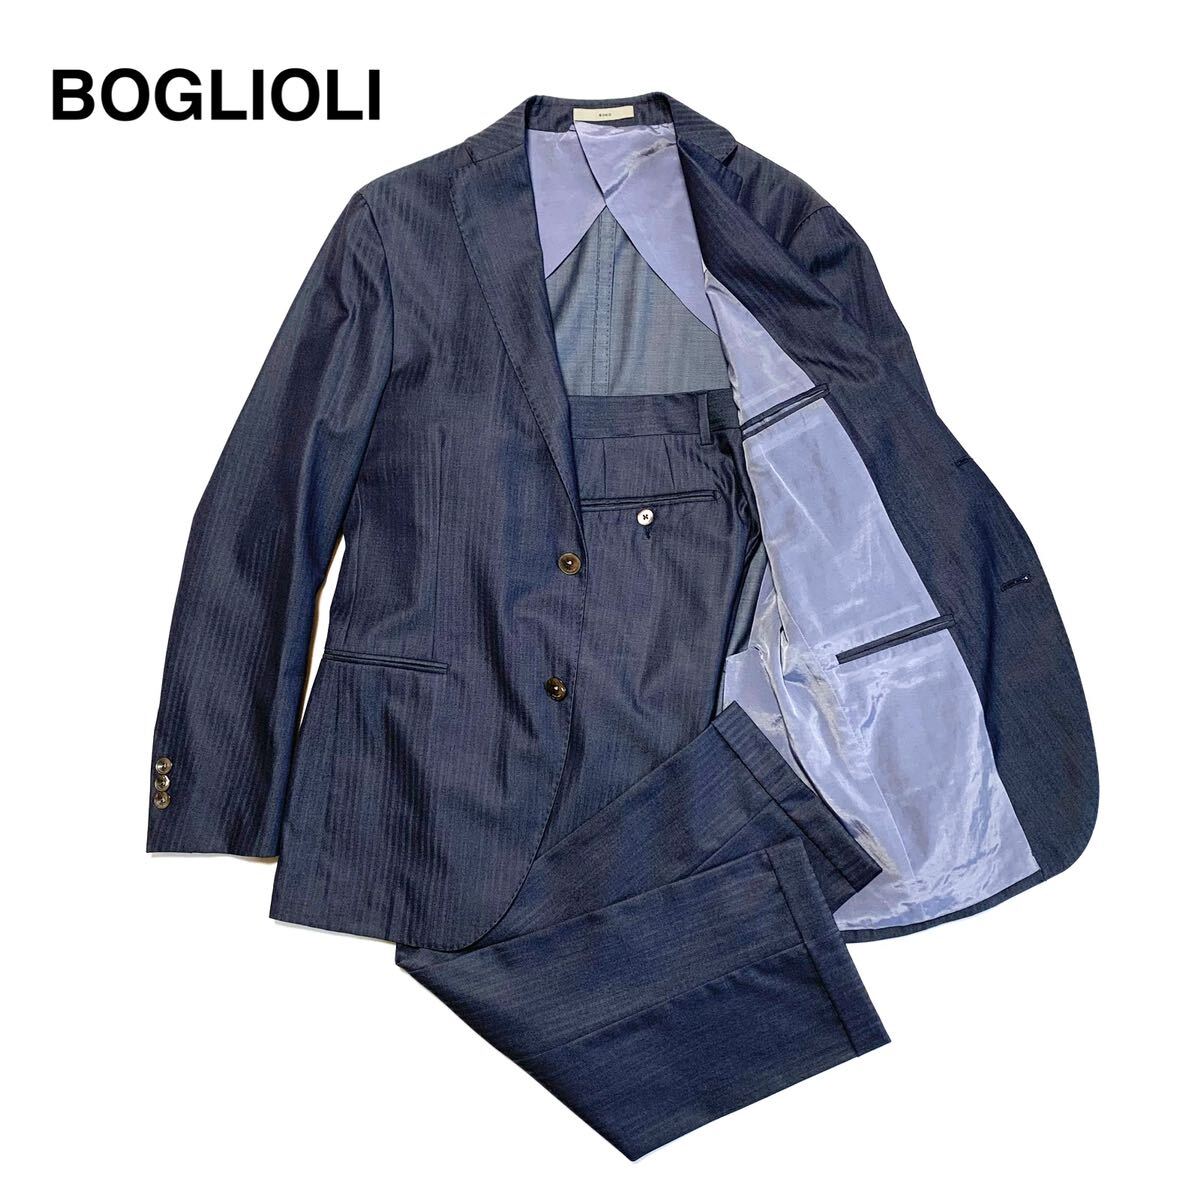 ☆良品 ボリオリ BOGLIOLI シャドーストライプ 3B セットアップ スーツ 濃紺 size 46 イタリア製 ビジネス フォーマル 紳士服